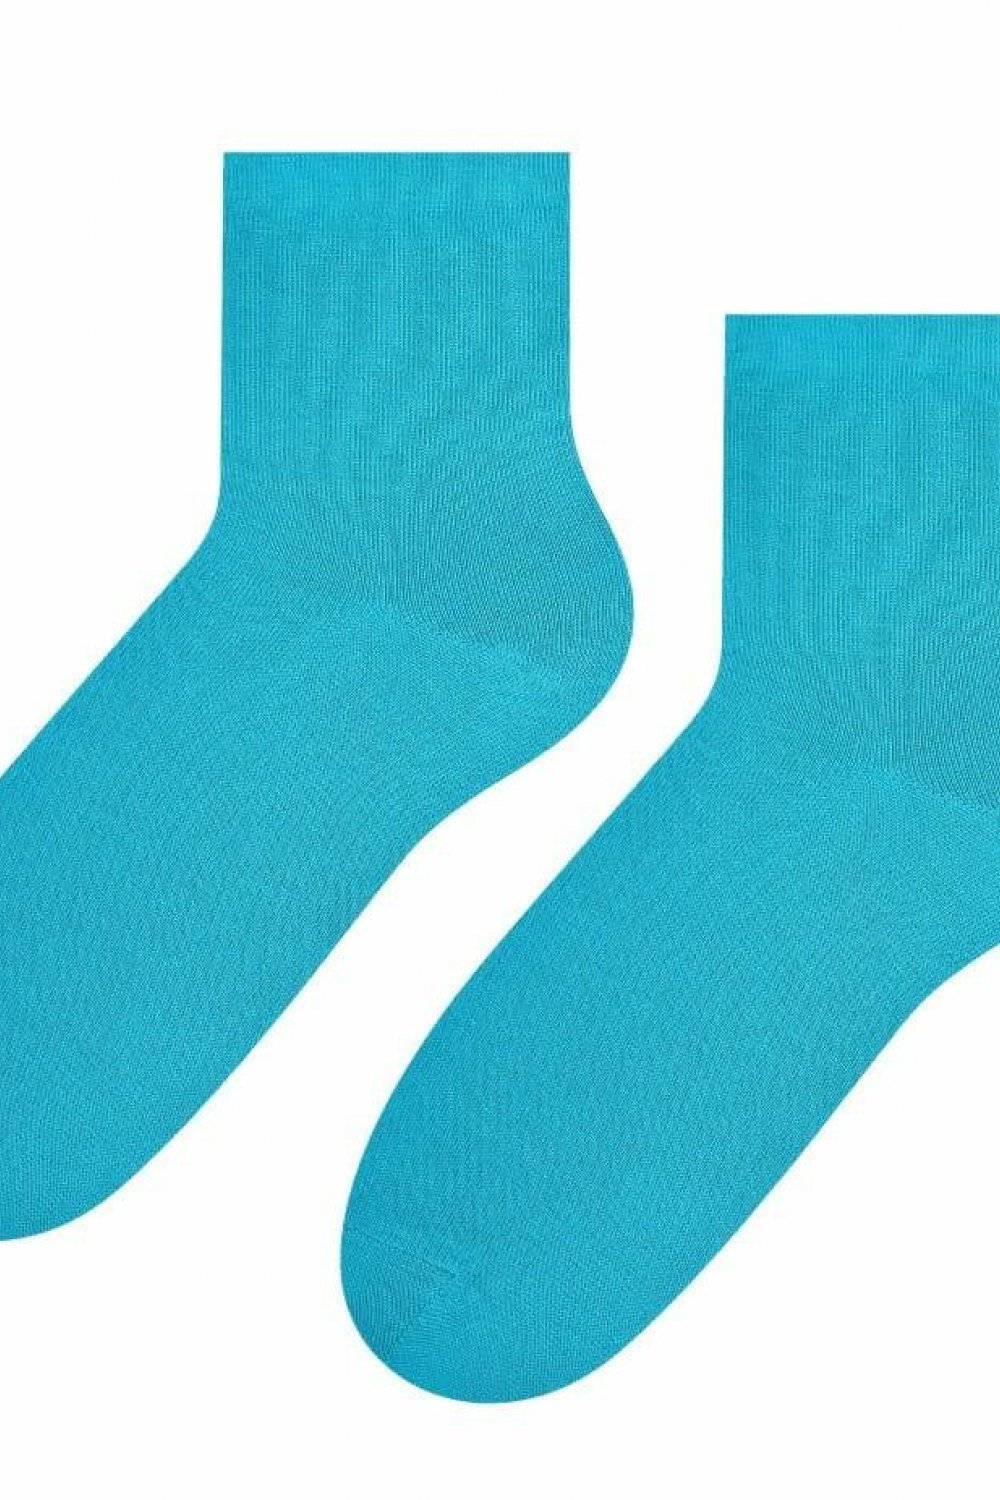 Dámské ponožky 037 dark turquise - Steven tyrkysová 35/37